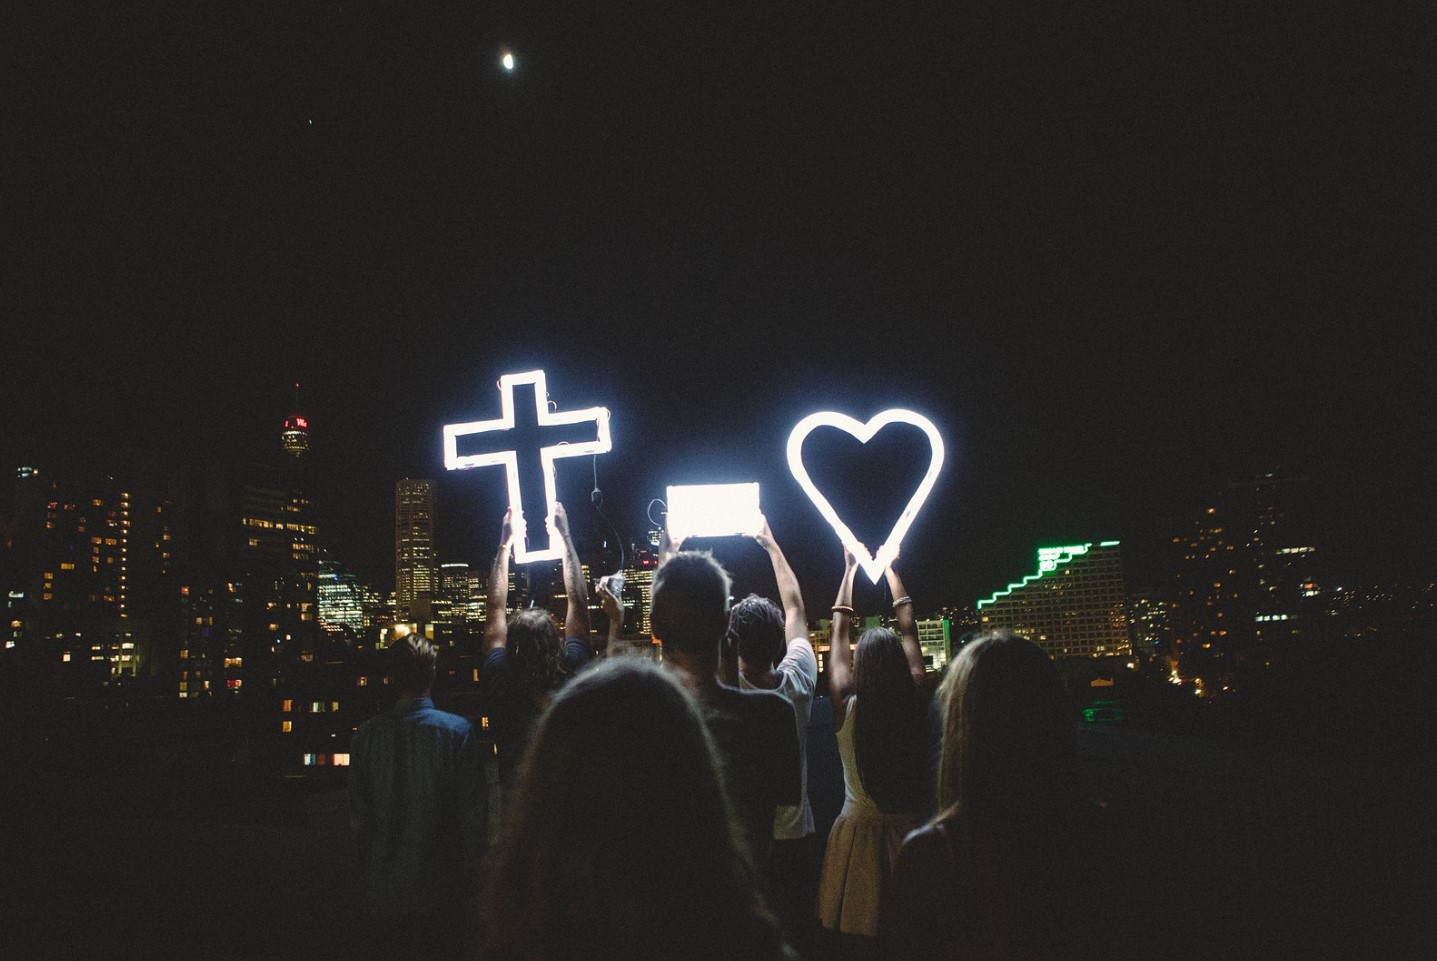 simbolo de cruz y amor